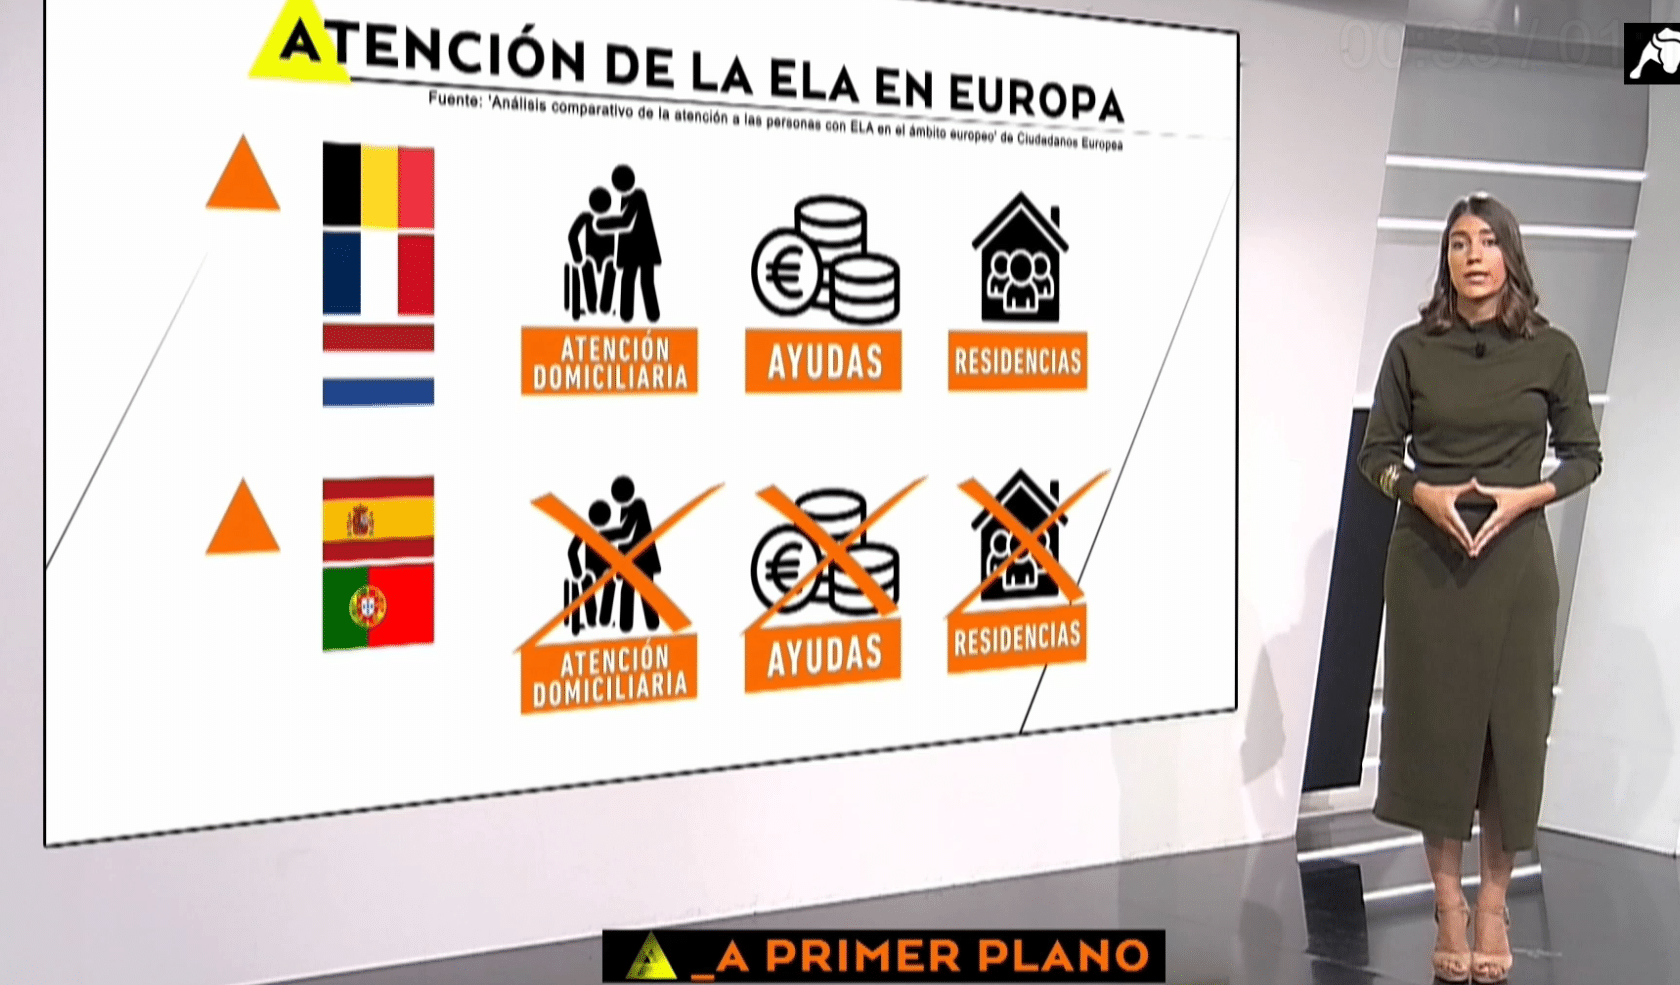  España, a la cola de Europa con la ELA: Países Bajos, Francia y Bélgica lideran la atención a estos pacientes